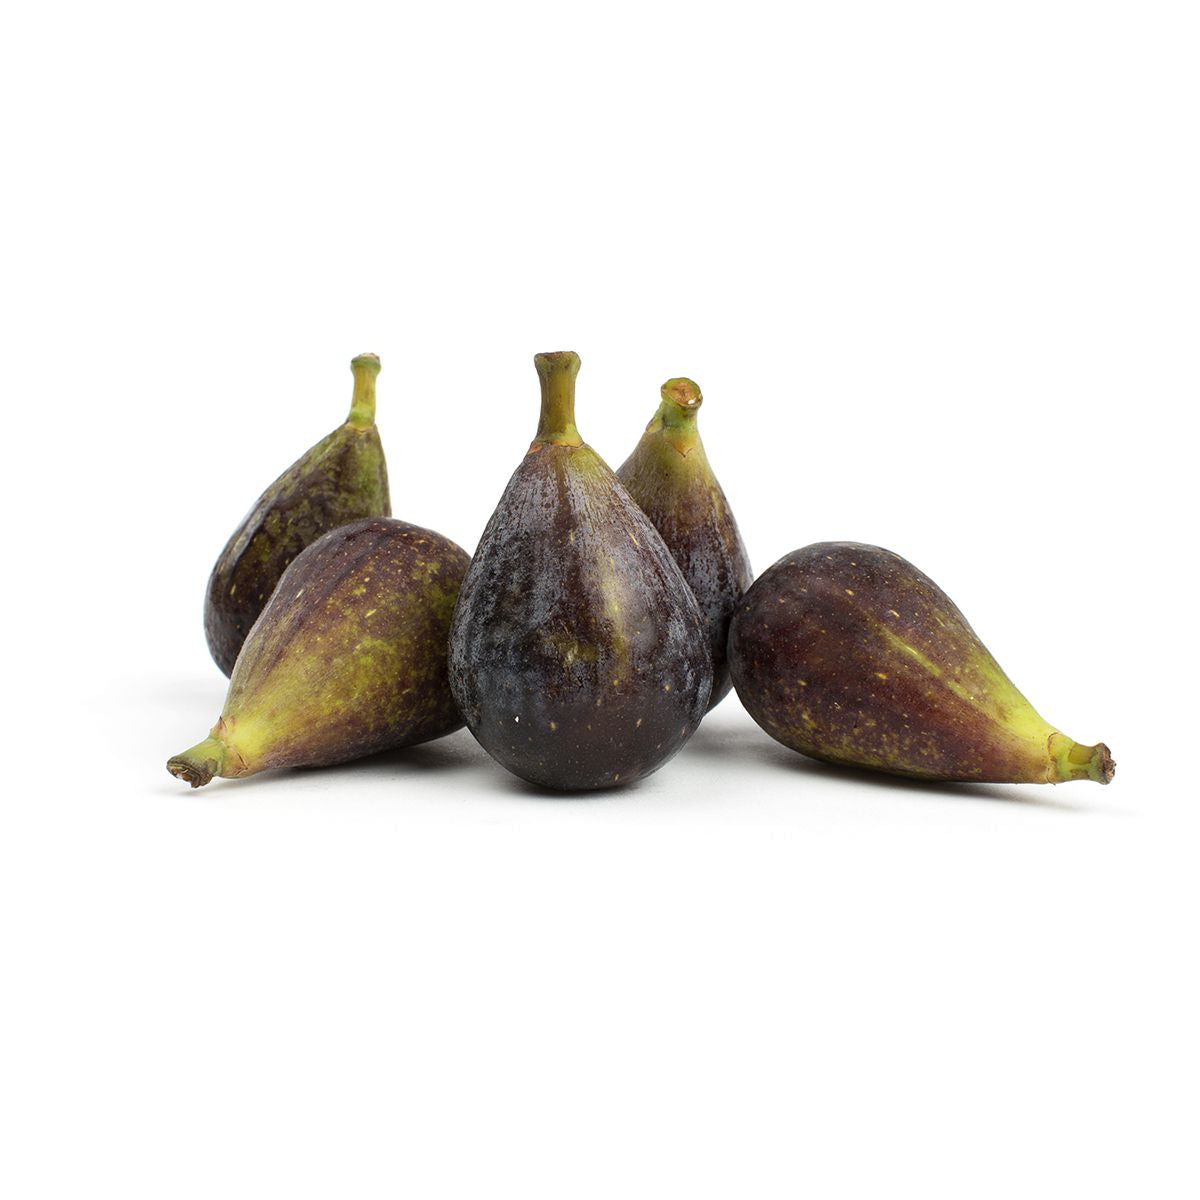 BoxNCase Brown Turkey Figs 1 LB